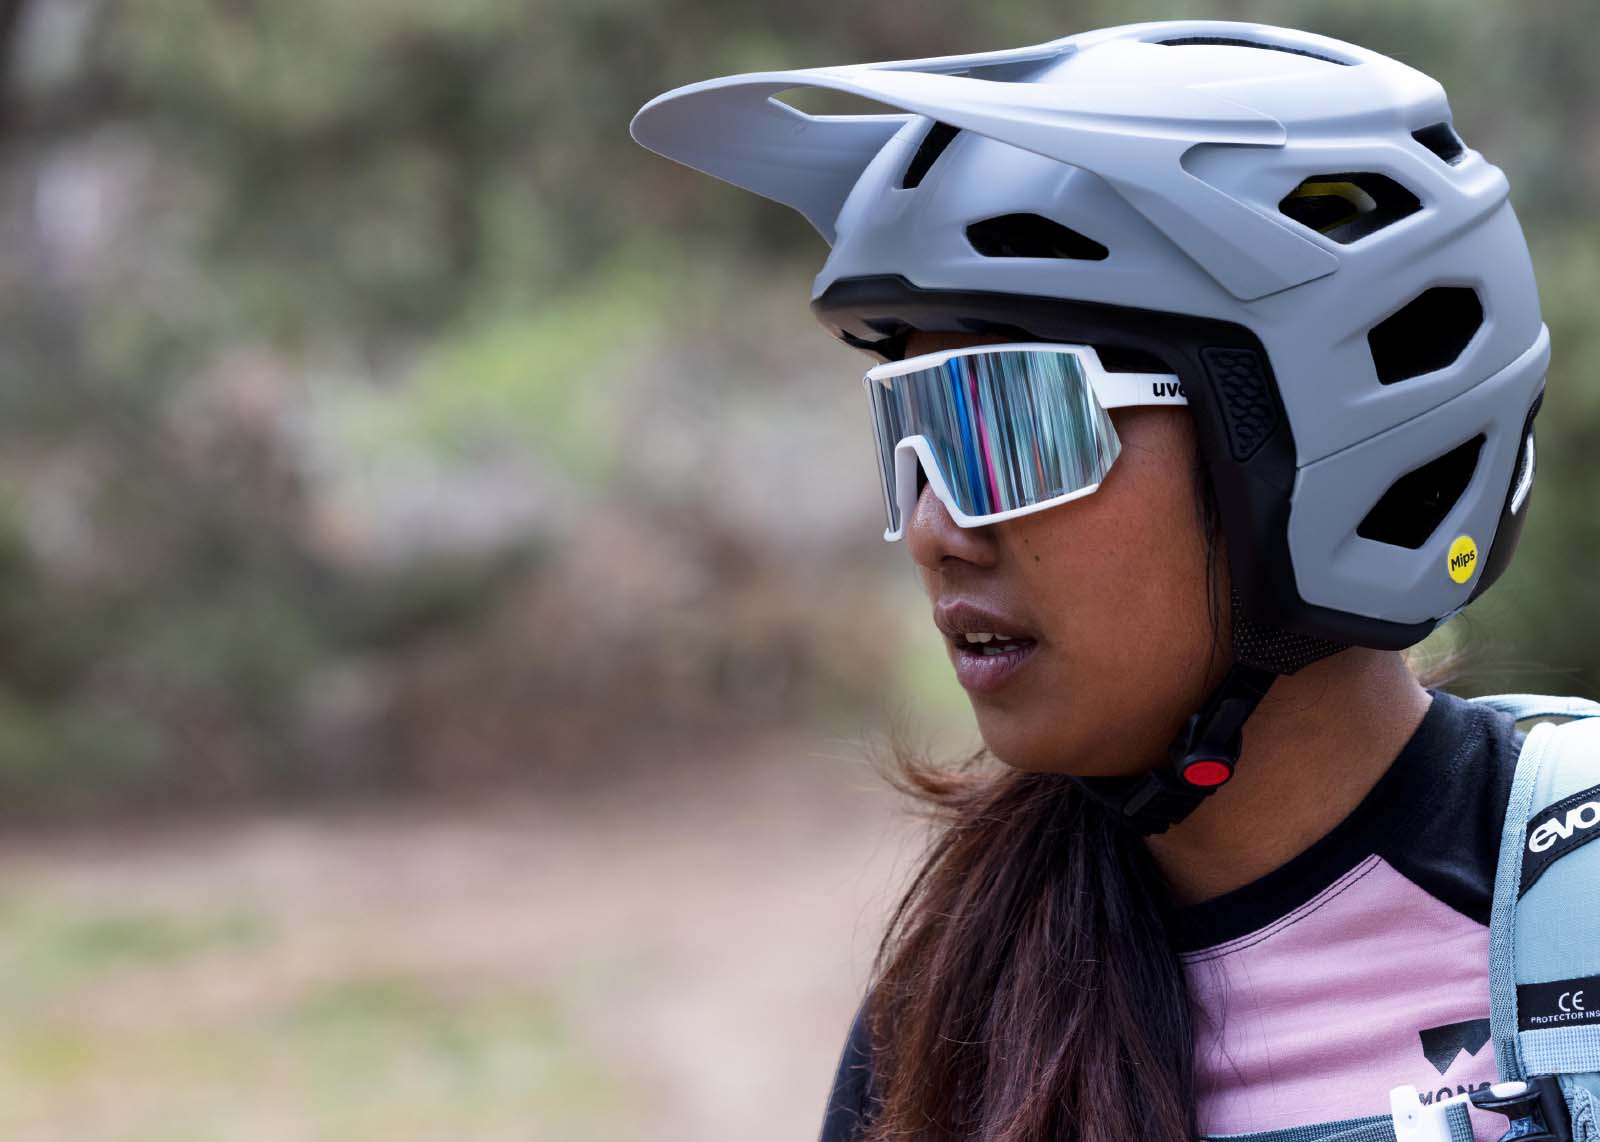 UVEX Bike Helmets